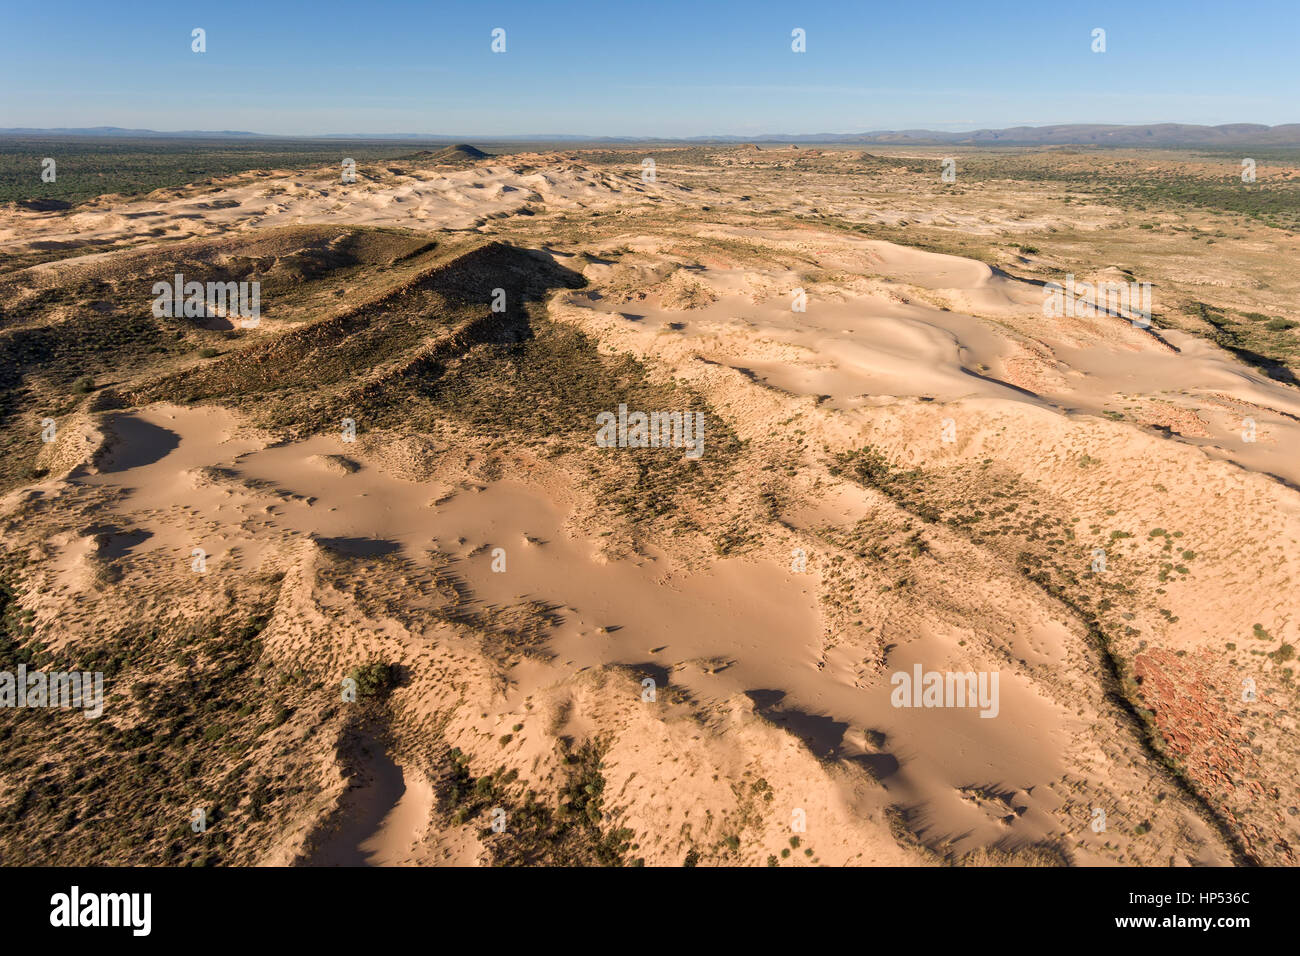 Vue aérienne du massif de dunes de sable dans la région aride du nord du Cap, Afrique du Sud Banque D'Images